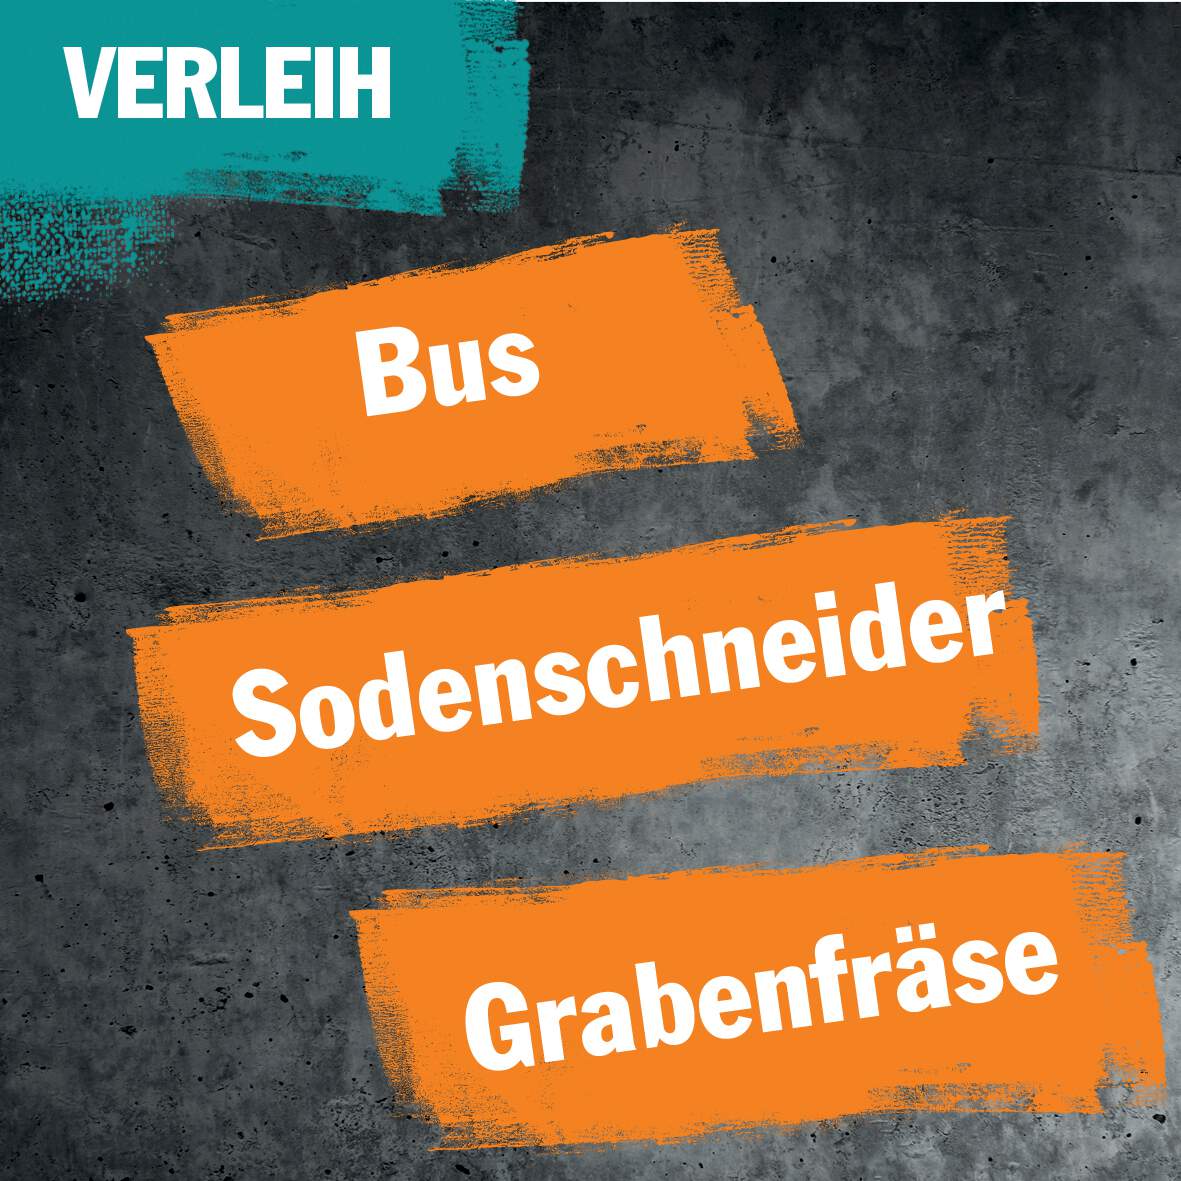 1256647 - Verleih:  Bus/Sodenschneider/Grabenfräse im Paket